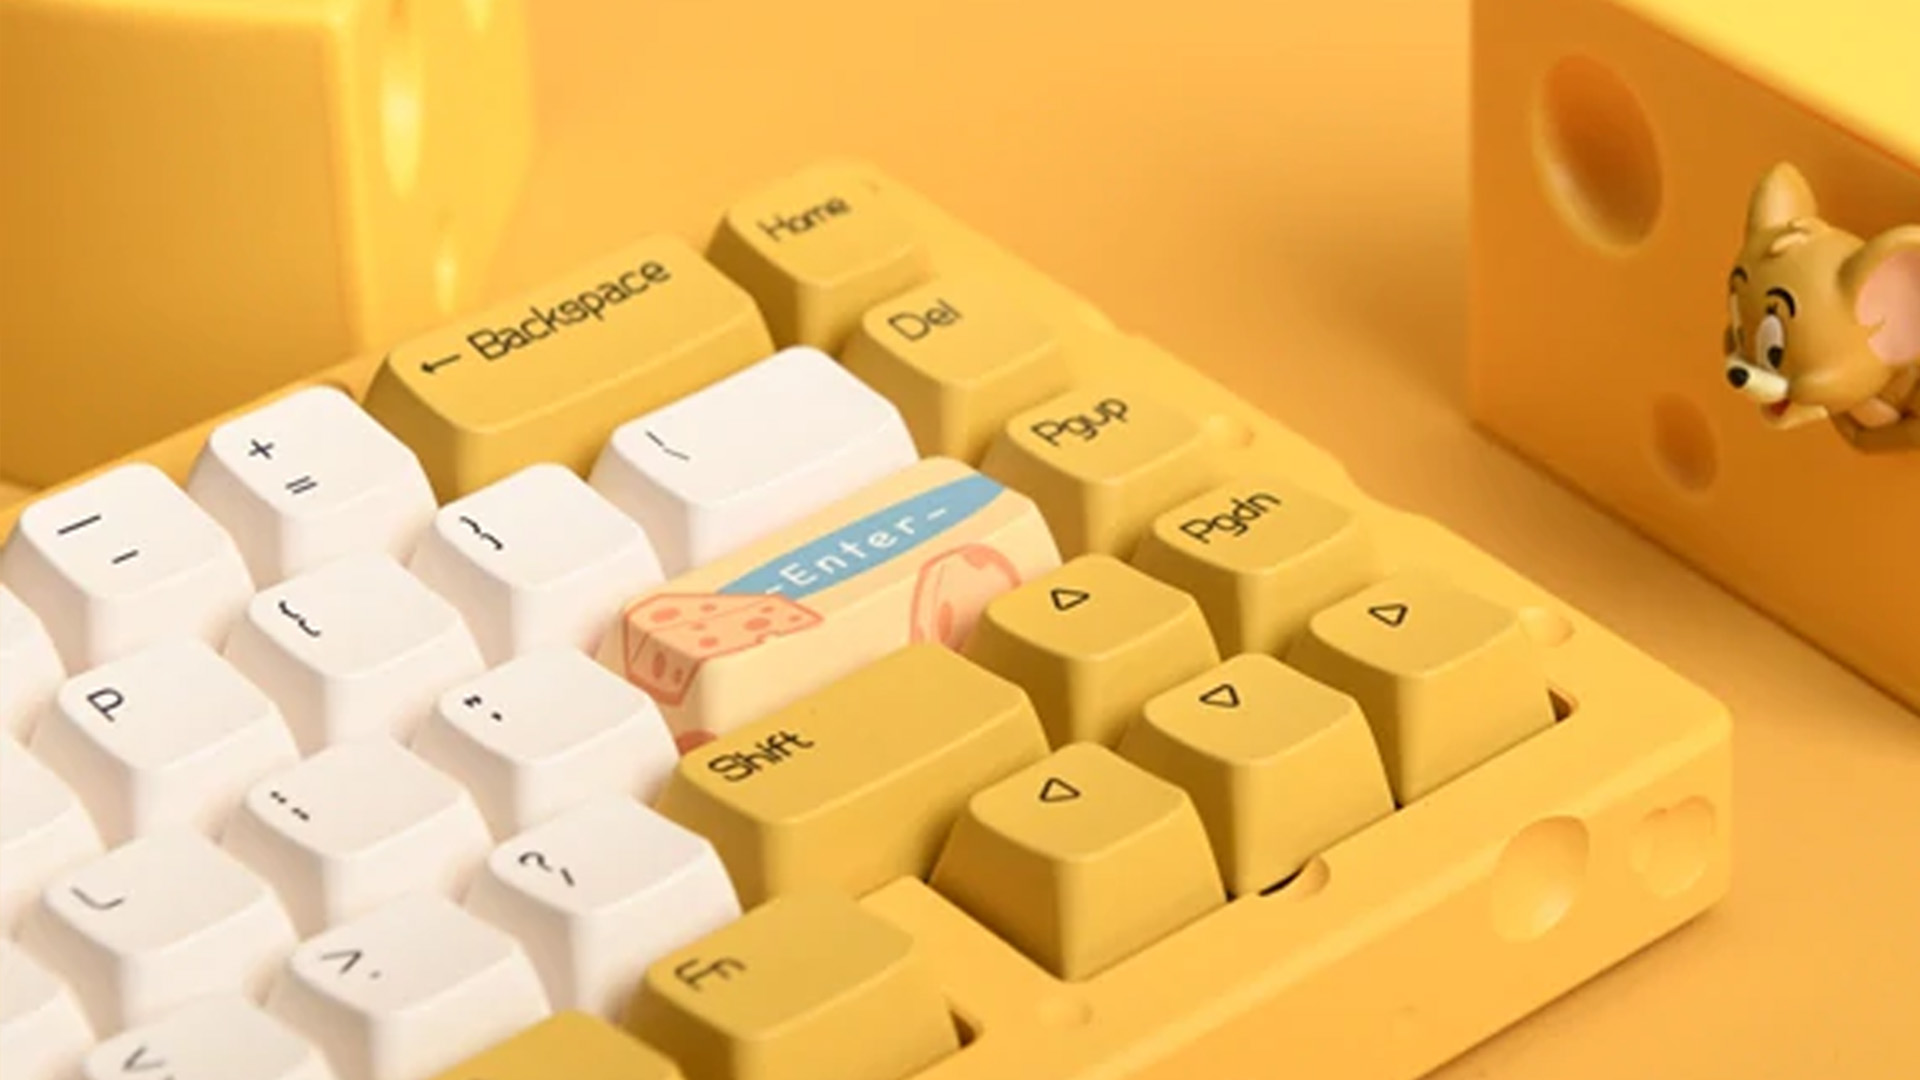 Ajazz mekanik klavyesi biraz peynir gibi görünecek şekilde tasarlandı.